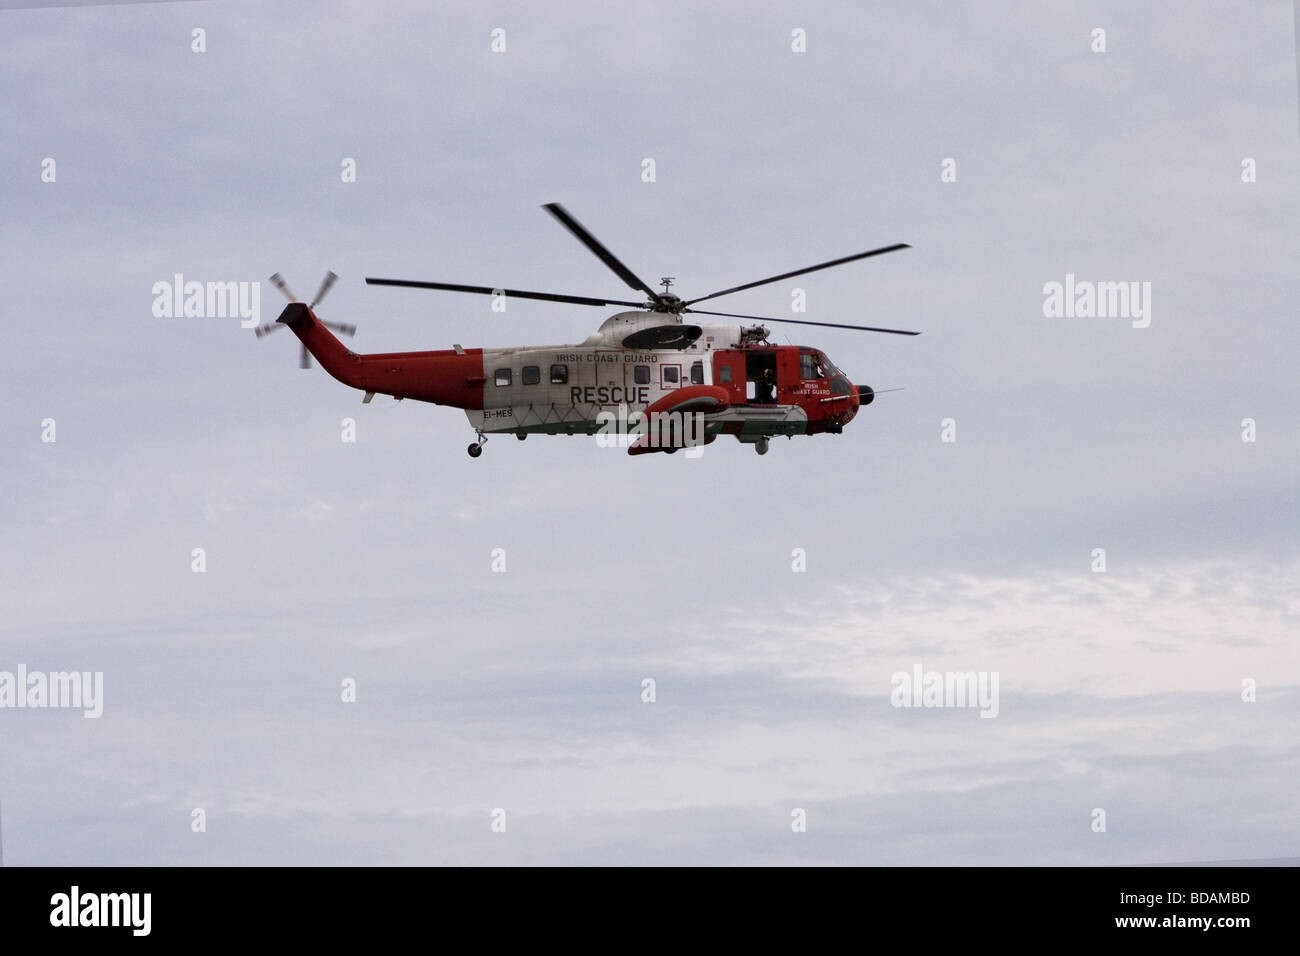 Helicóptero de rescate de la Guardia Costera irlandesa, Dublín, Irlanda Foto de stock